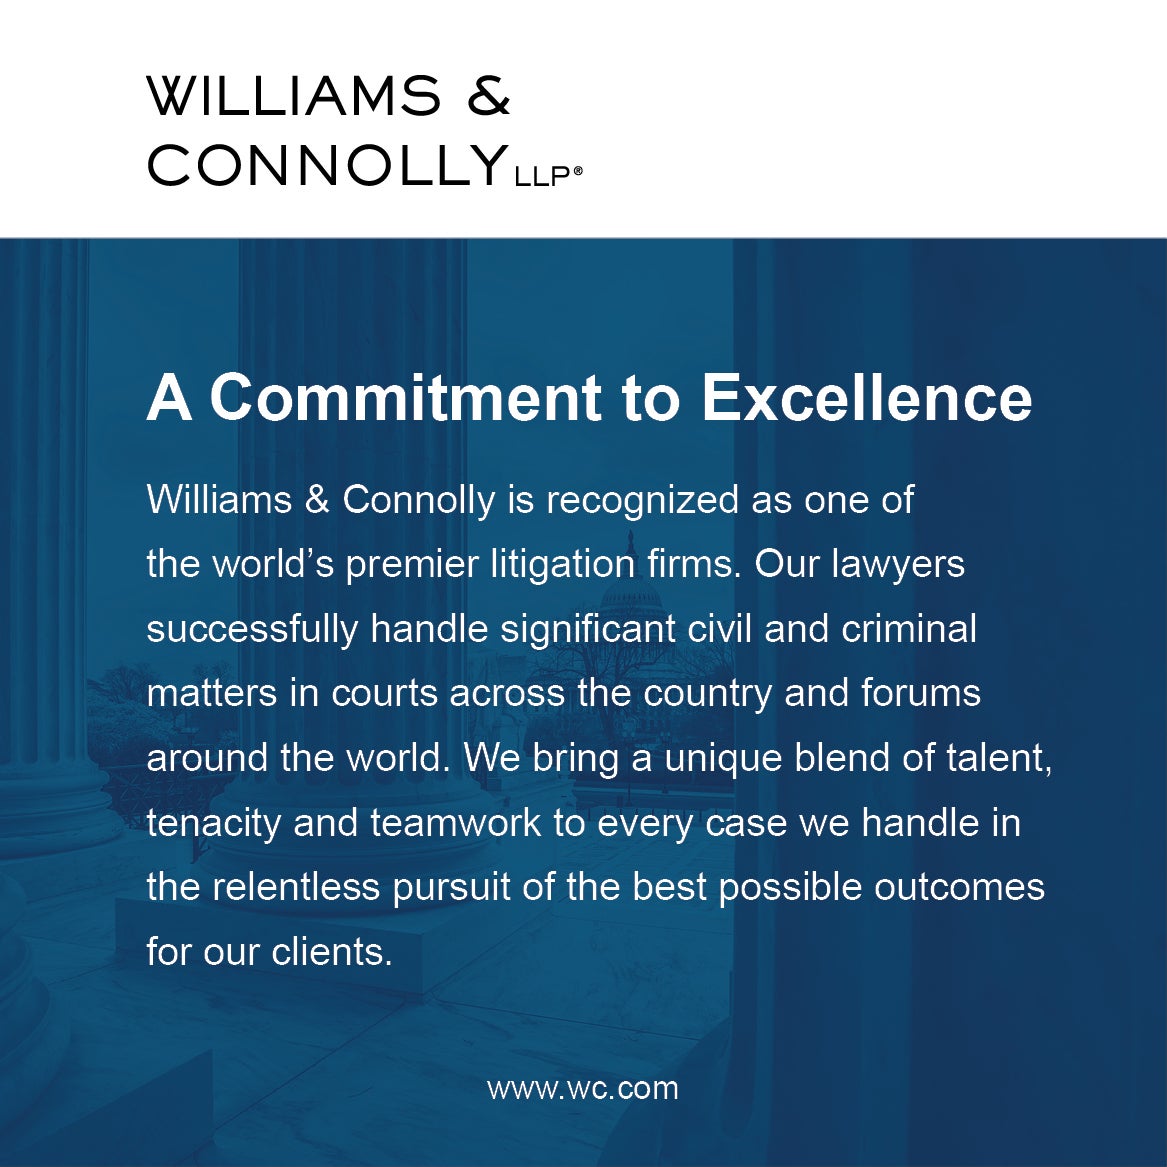 Williams & Connolly